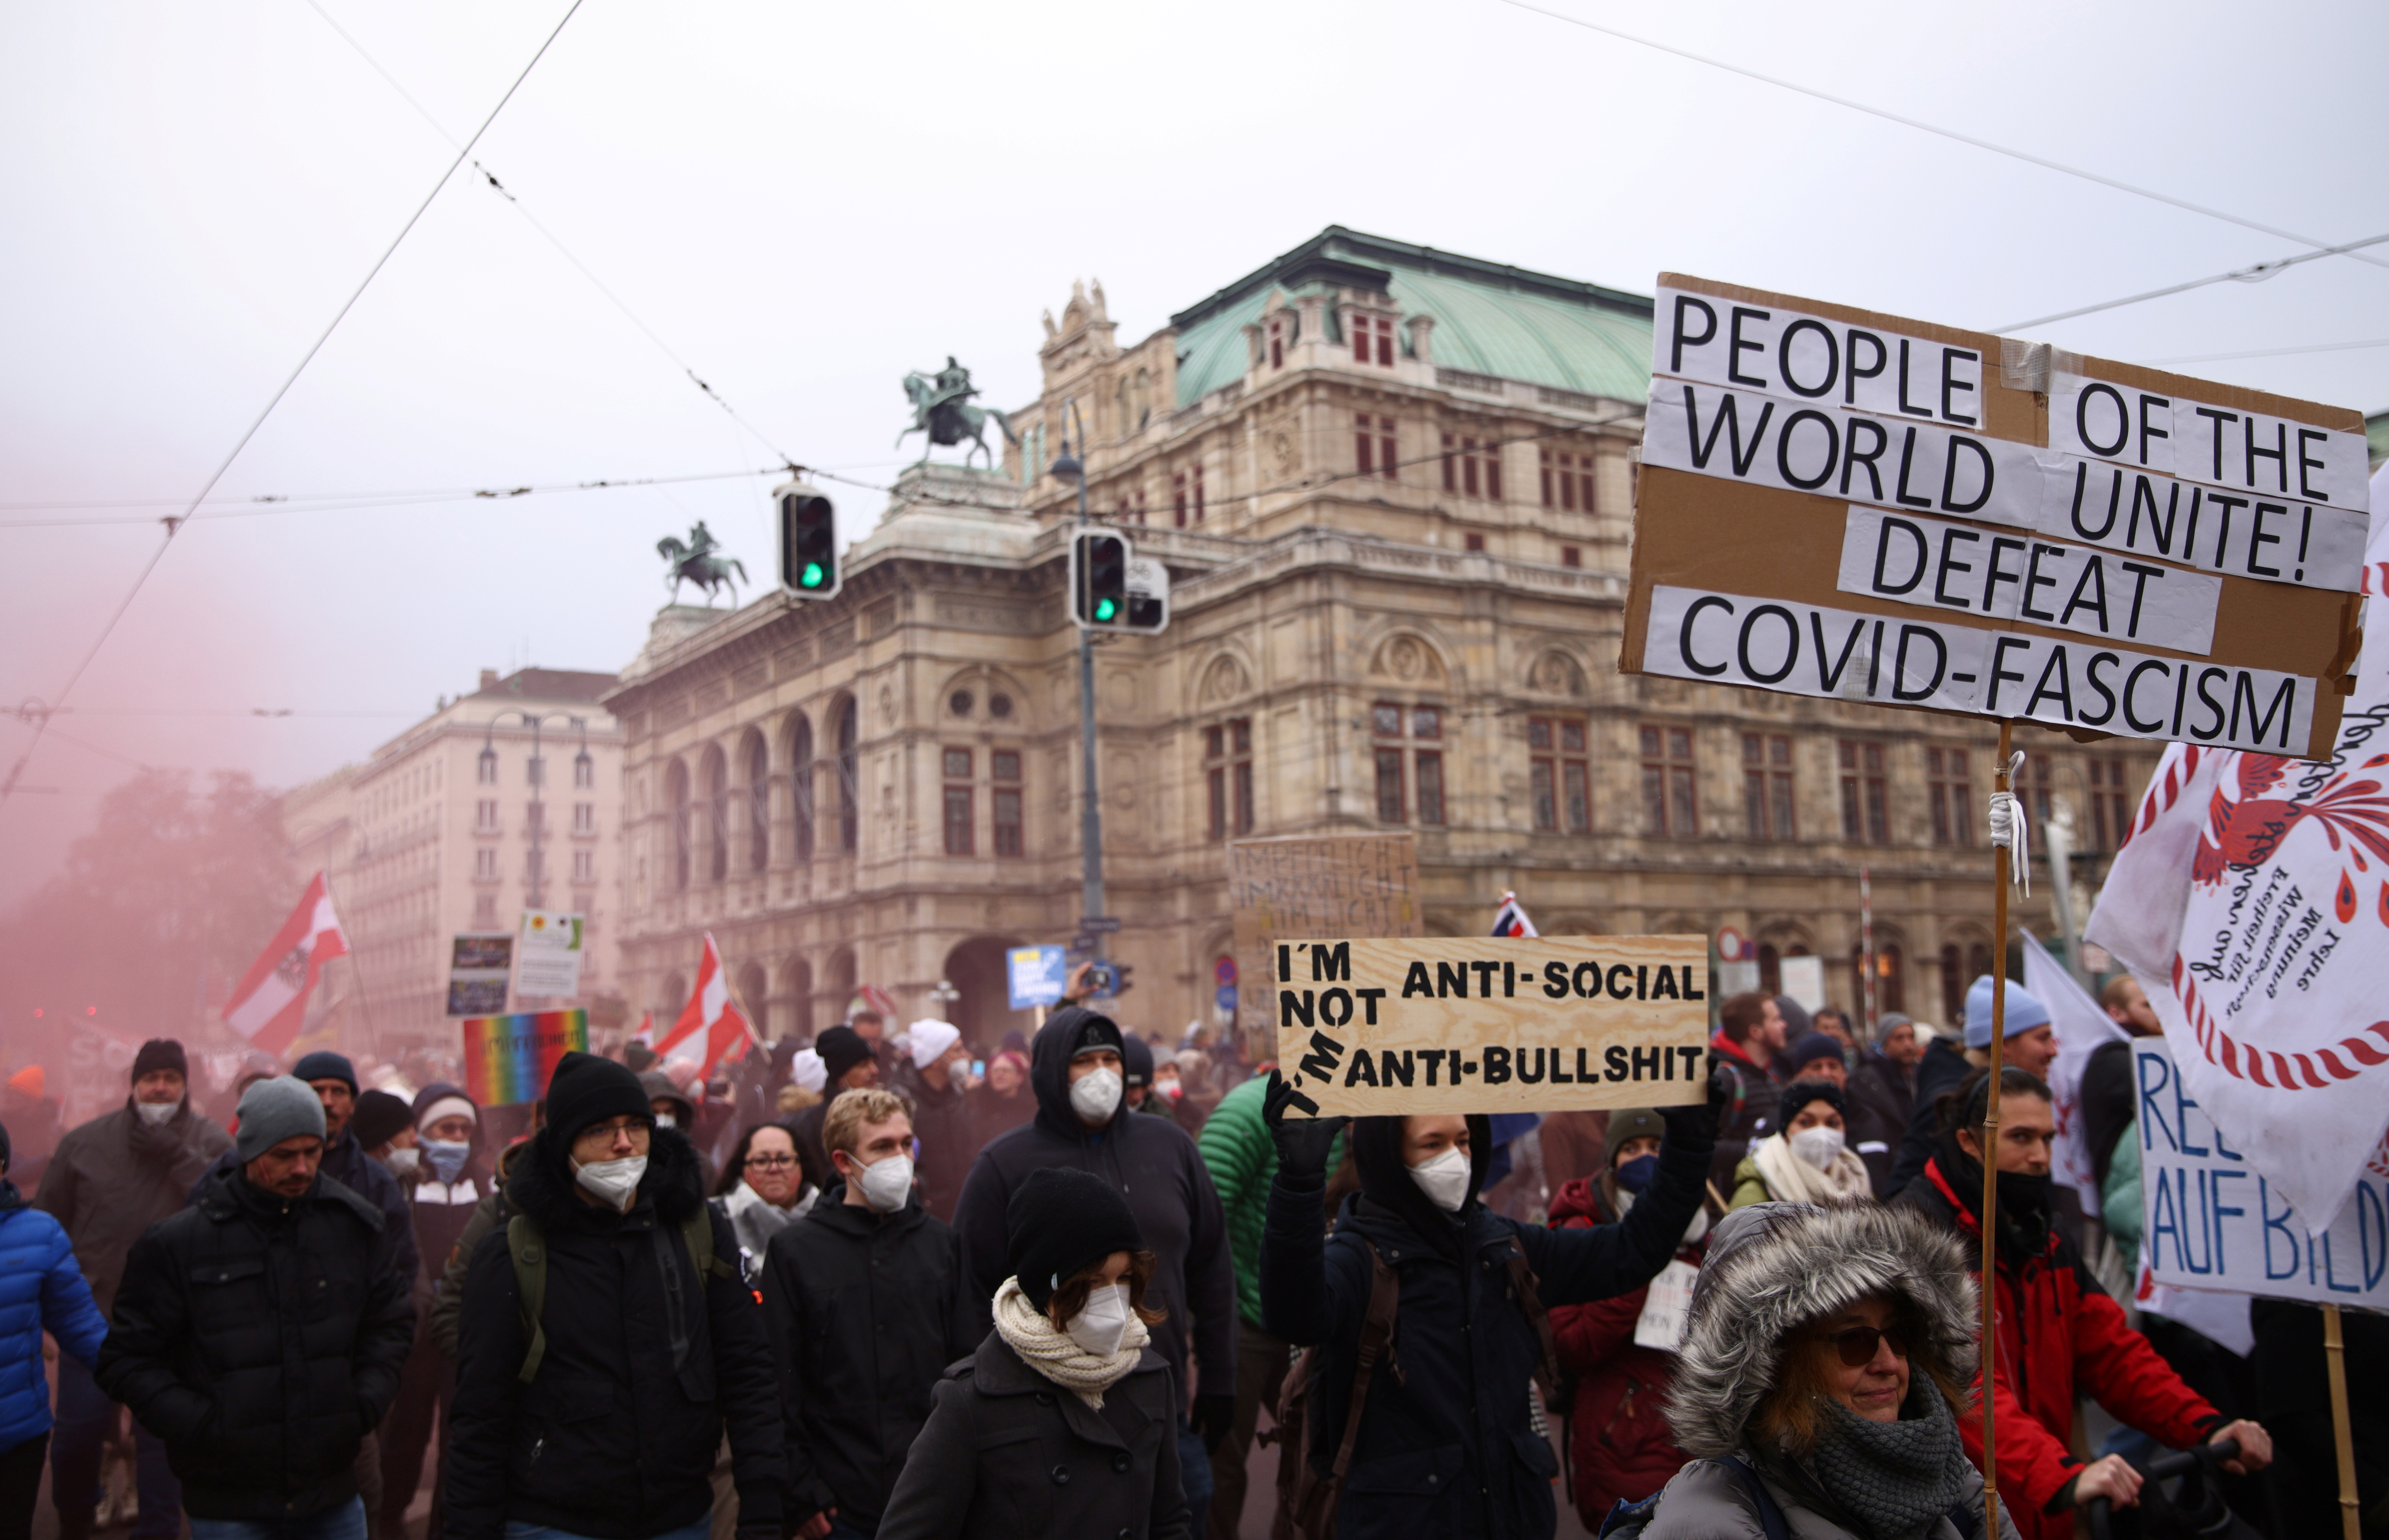 May hawak na mga flag at placard ang mga demonstrador habang nagmamartsa sila sa harap ng State Opera upang magprotesta laban sa mga paghihigpit sa sakit na coronavirus (COVID-19) at sa mandatoryong pagbabakuna sa Vienna, Austria, Disyembre 4, 2021. REUTERS/Lisi Niesner